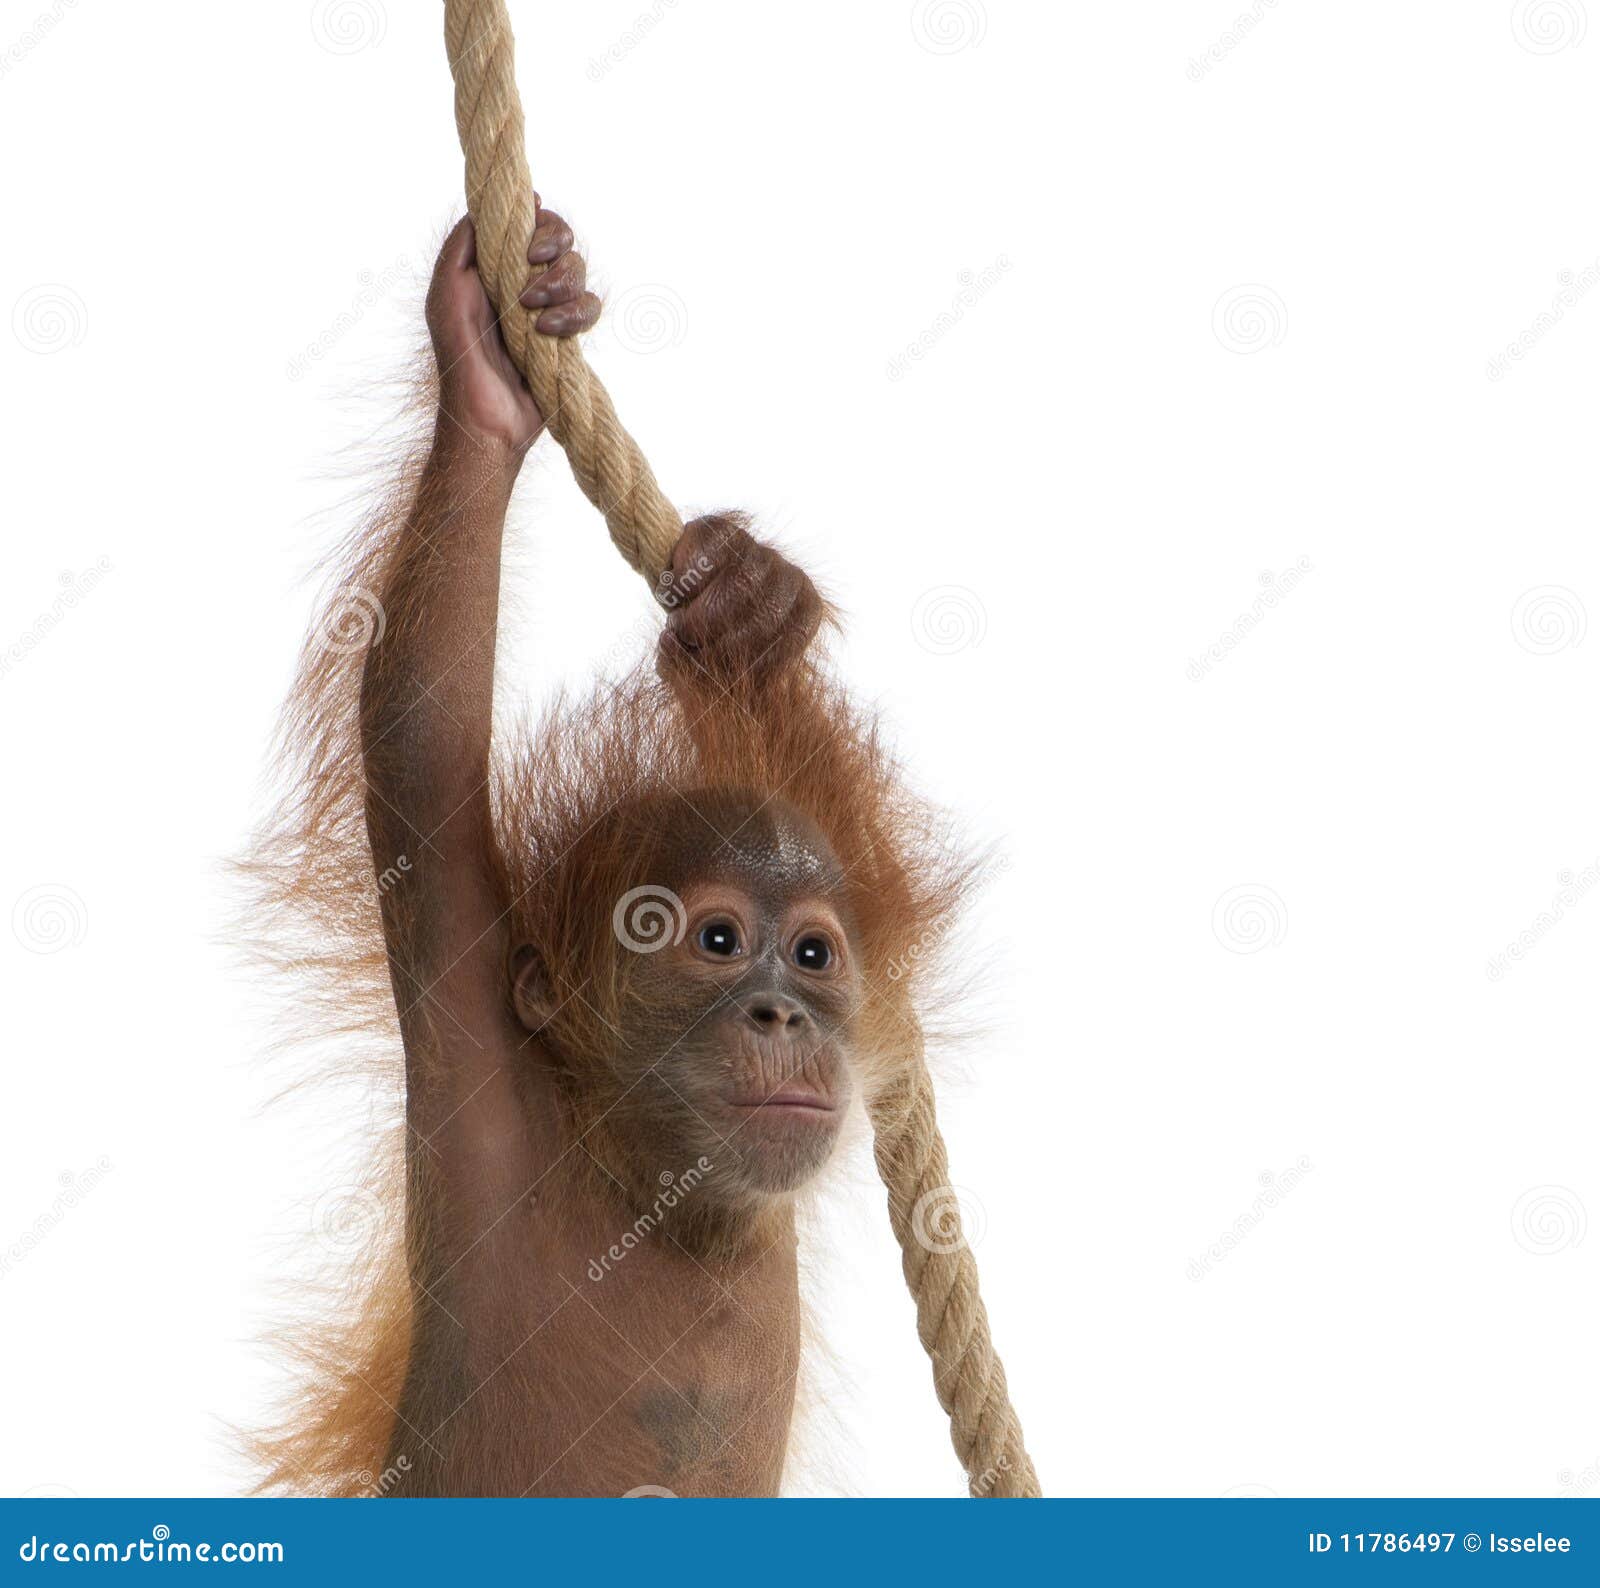 baby sumatran orangutan hanging on rope